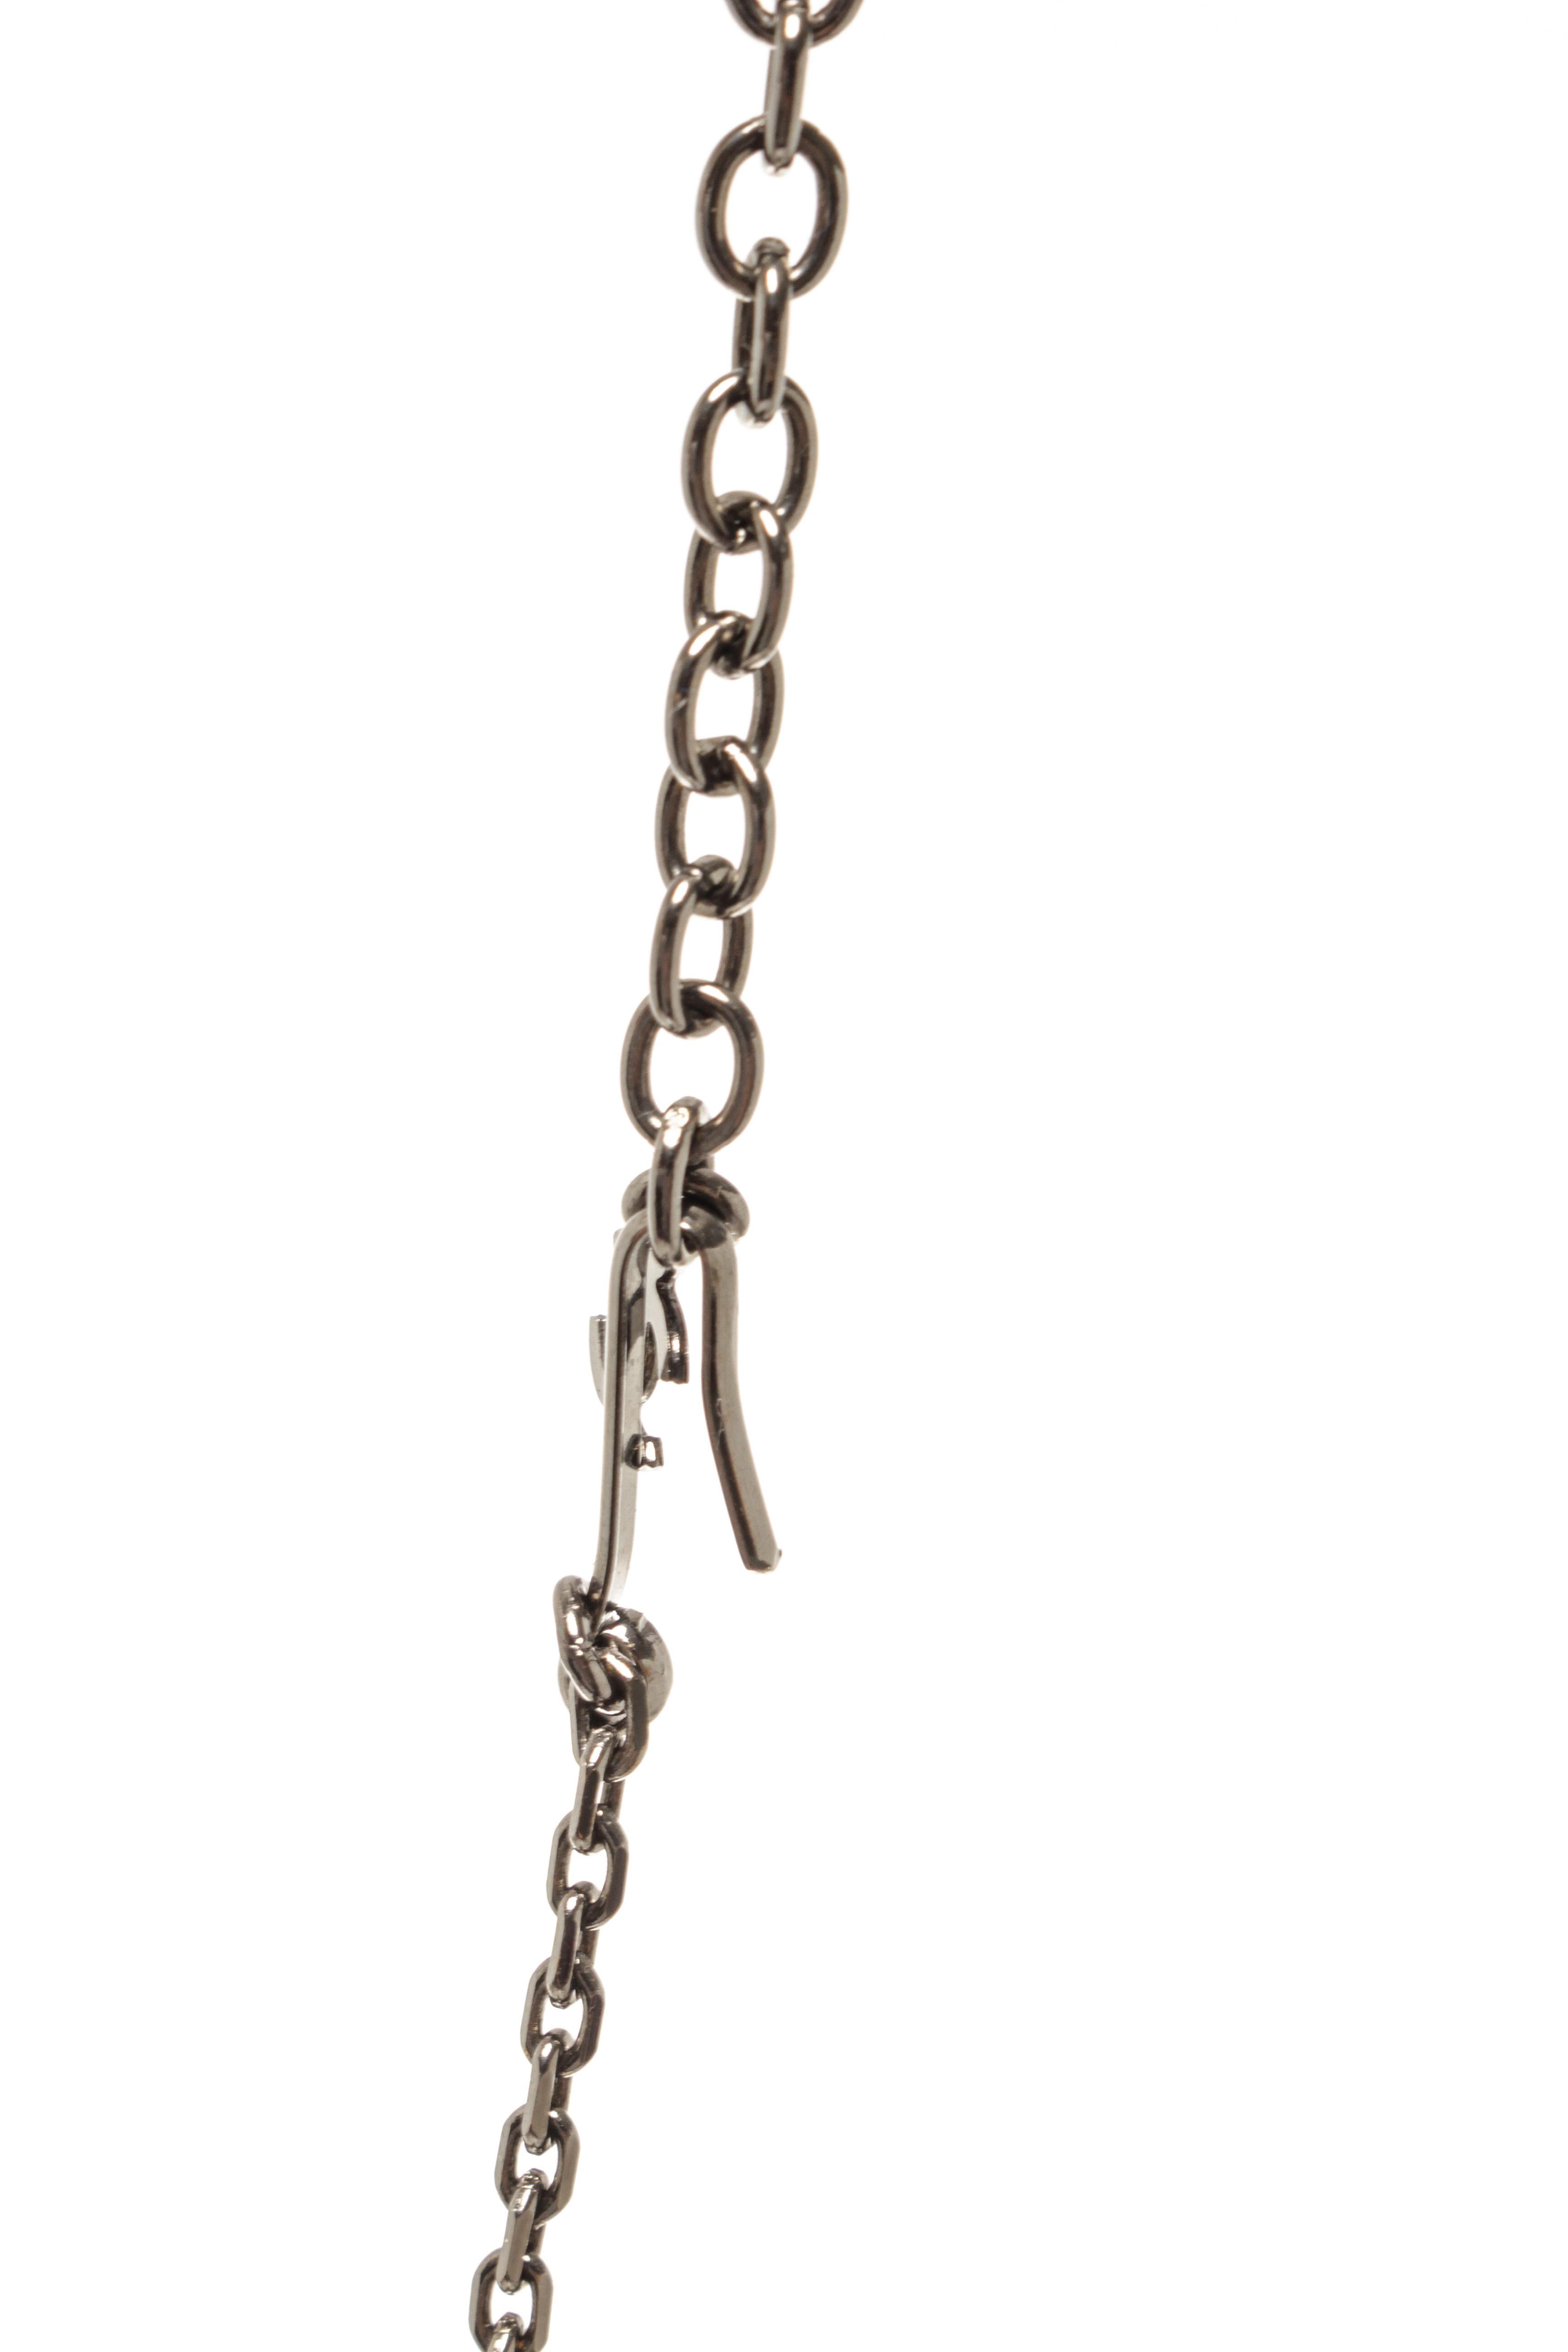 Collier Mademoiselle de Chanel de couleur argentée avec un pendentif mademoiselle et une fermeture à crochet et à œil avec plusieurs options de longueur.

770080MSC